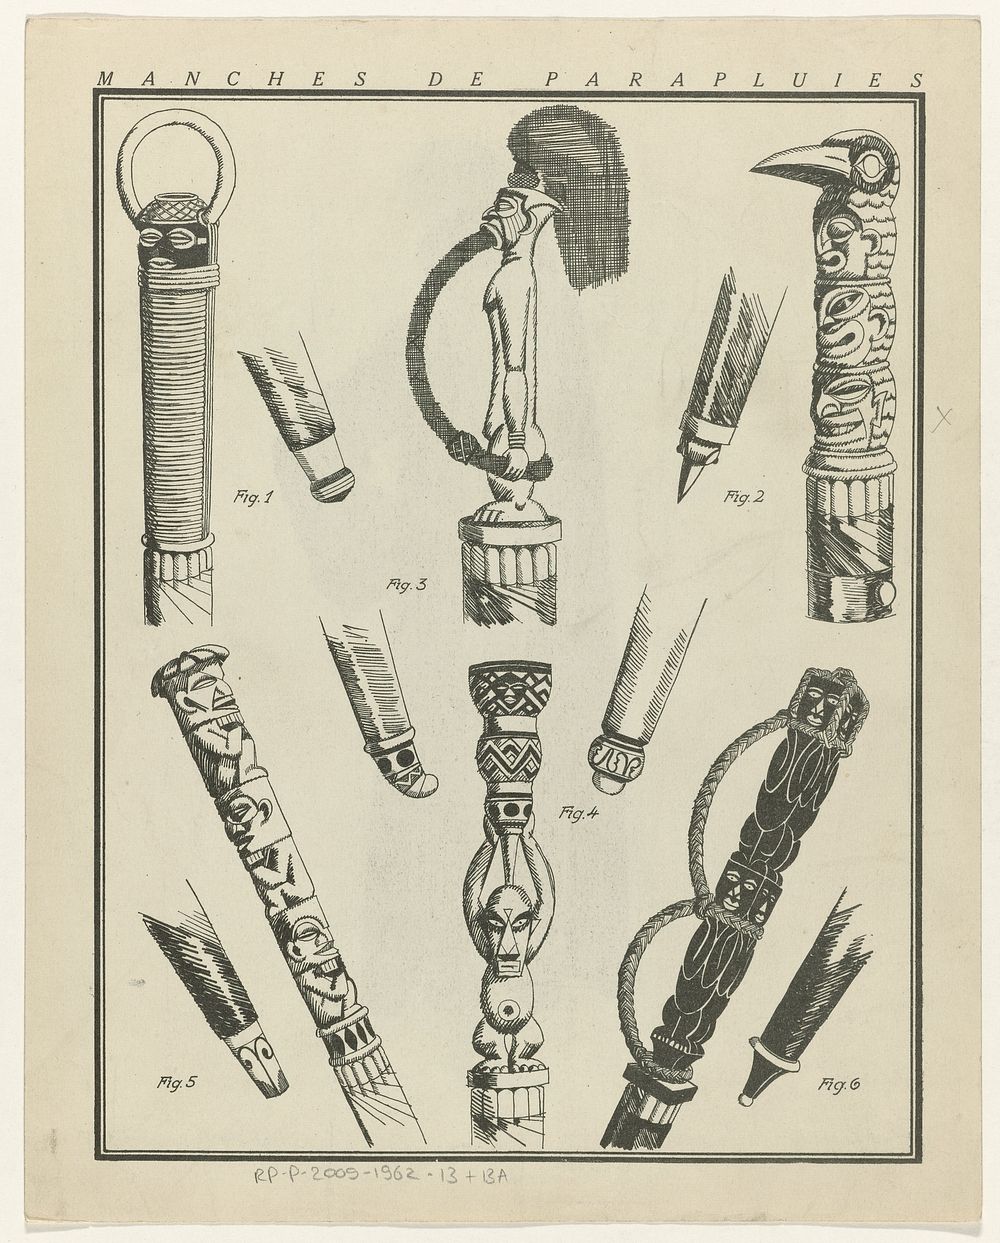 Gazette du Bon Ton, 1922 - No. 8 : Manches de parapluies (1922) by anonymous, Lucien Vogel, Condé Nast Publisher and Condé…